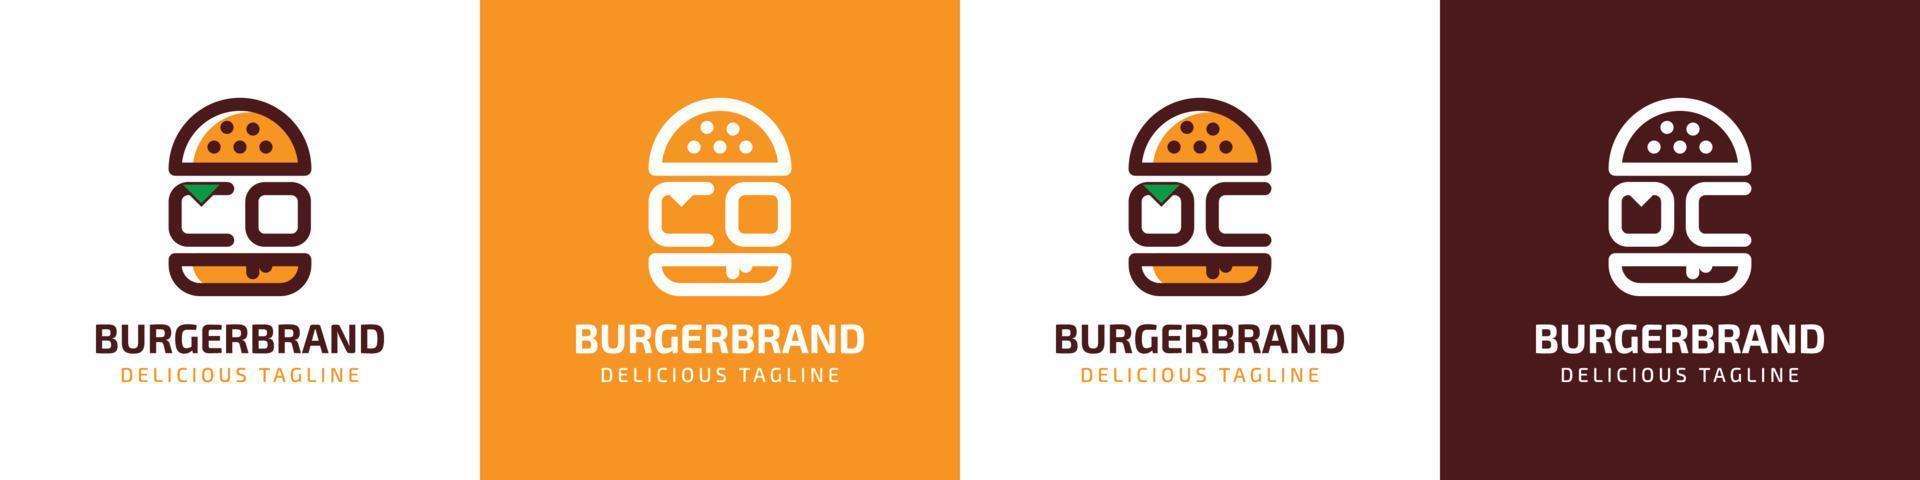 brev co och oc burger logotyp, lämplig för några företag relaterad till burger med co eller oc initialer. vektor